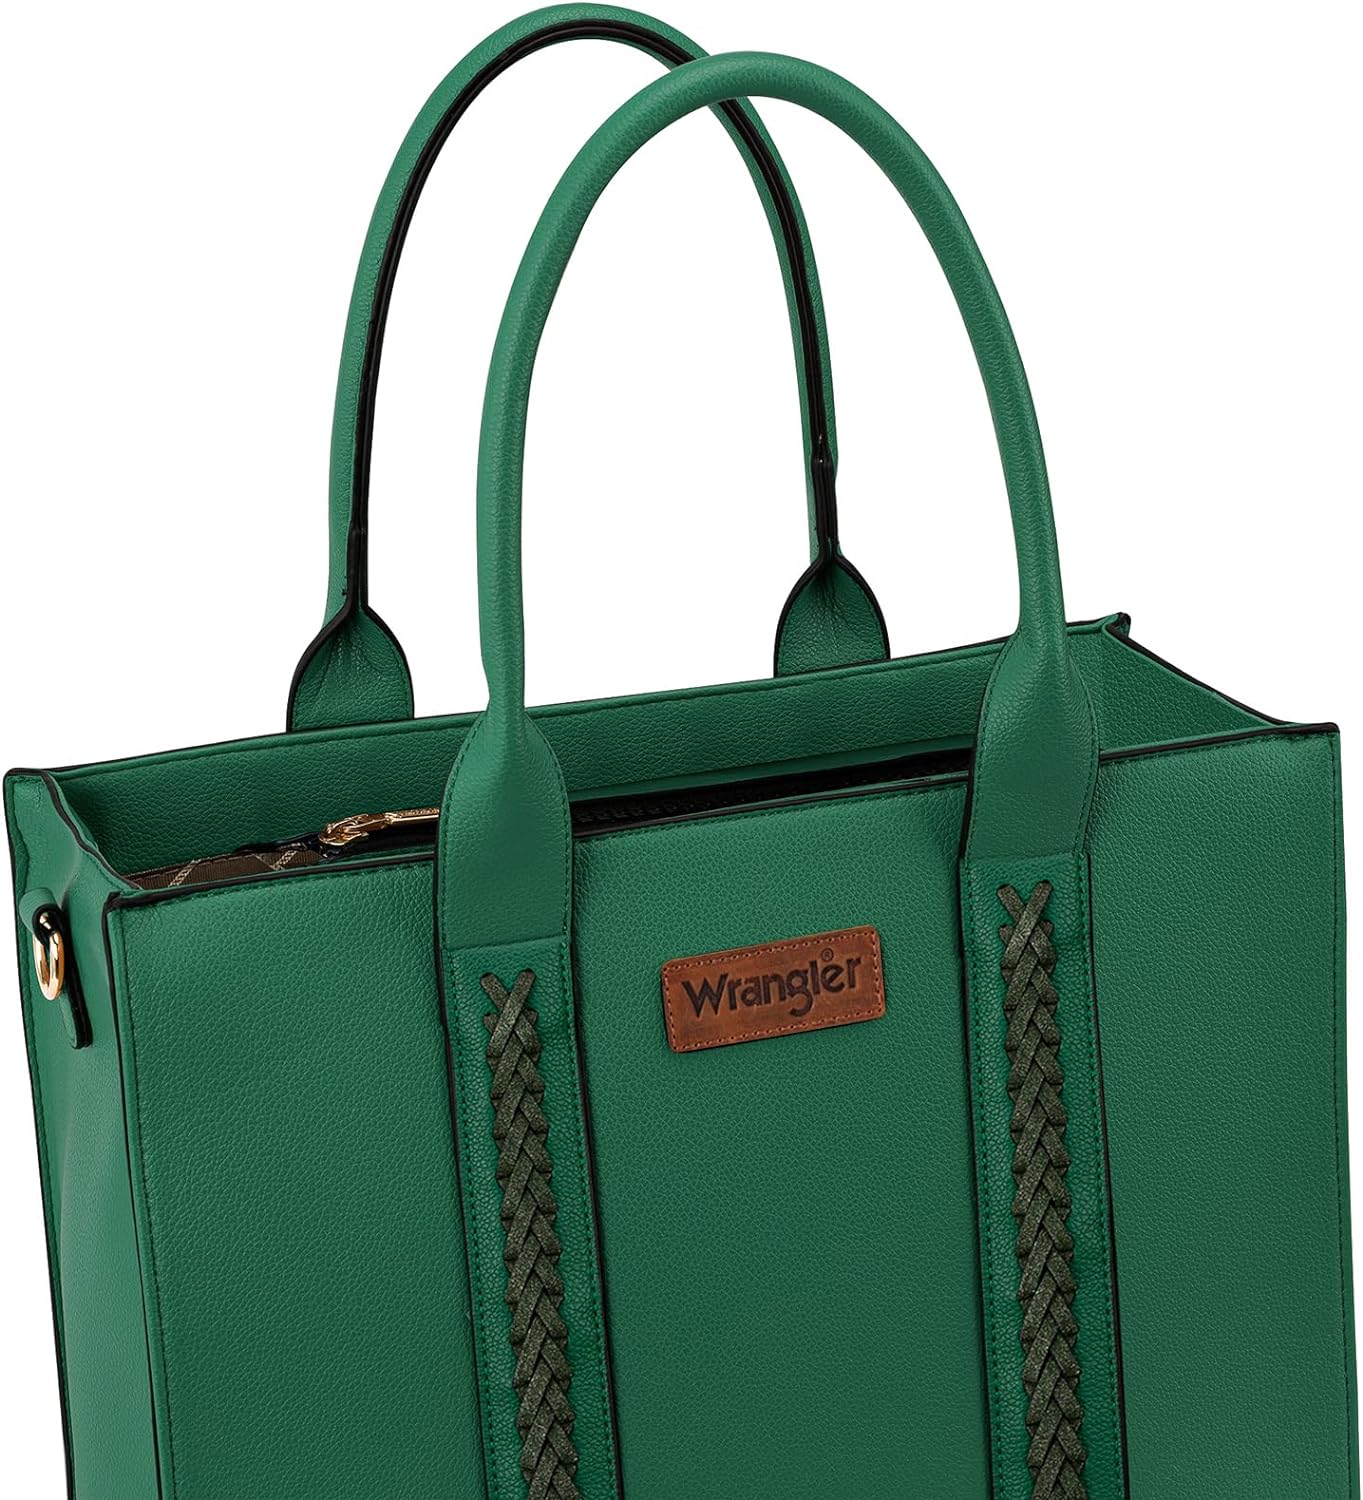 Wrangler Tote Bag for Women Shoulder Purse Handbag with Zipper Crossbody Bag